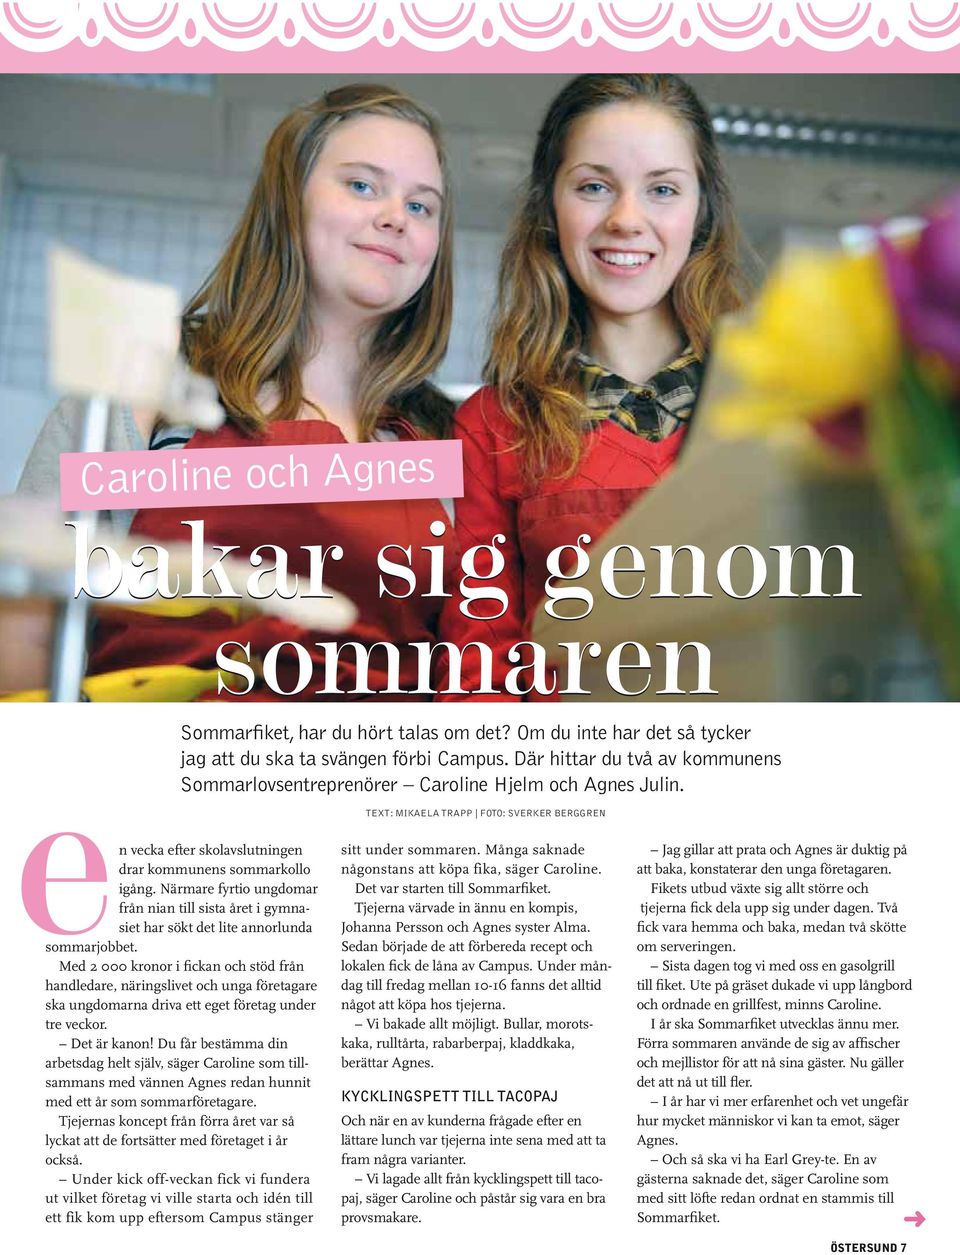 Där hittar du två av kommunens Sommarlovsentreprenörer Caroline Hjelm och Agnes